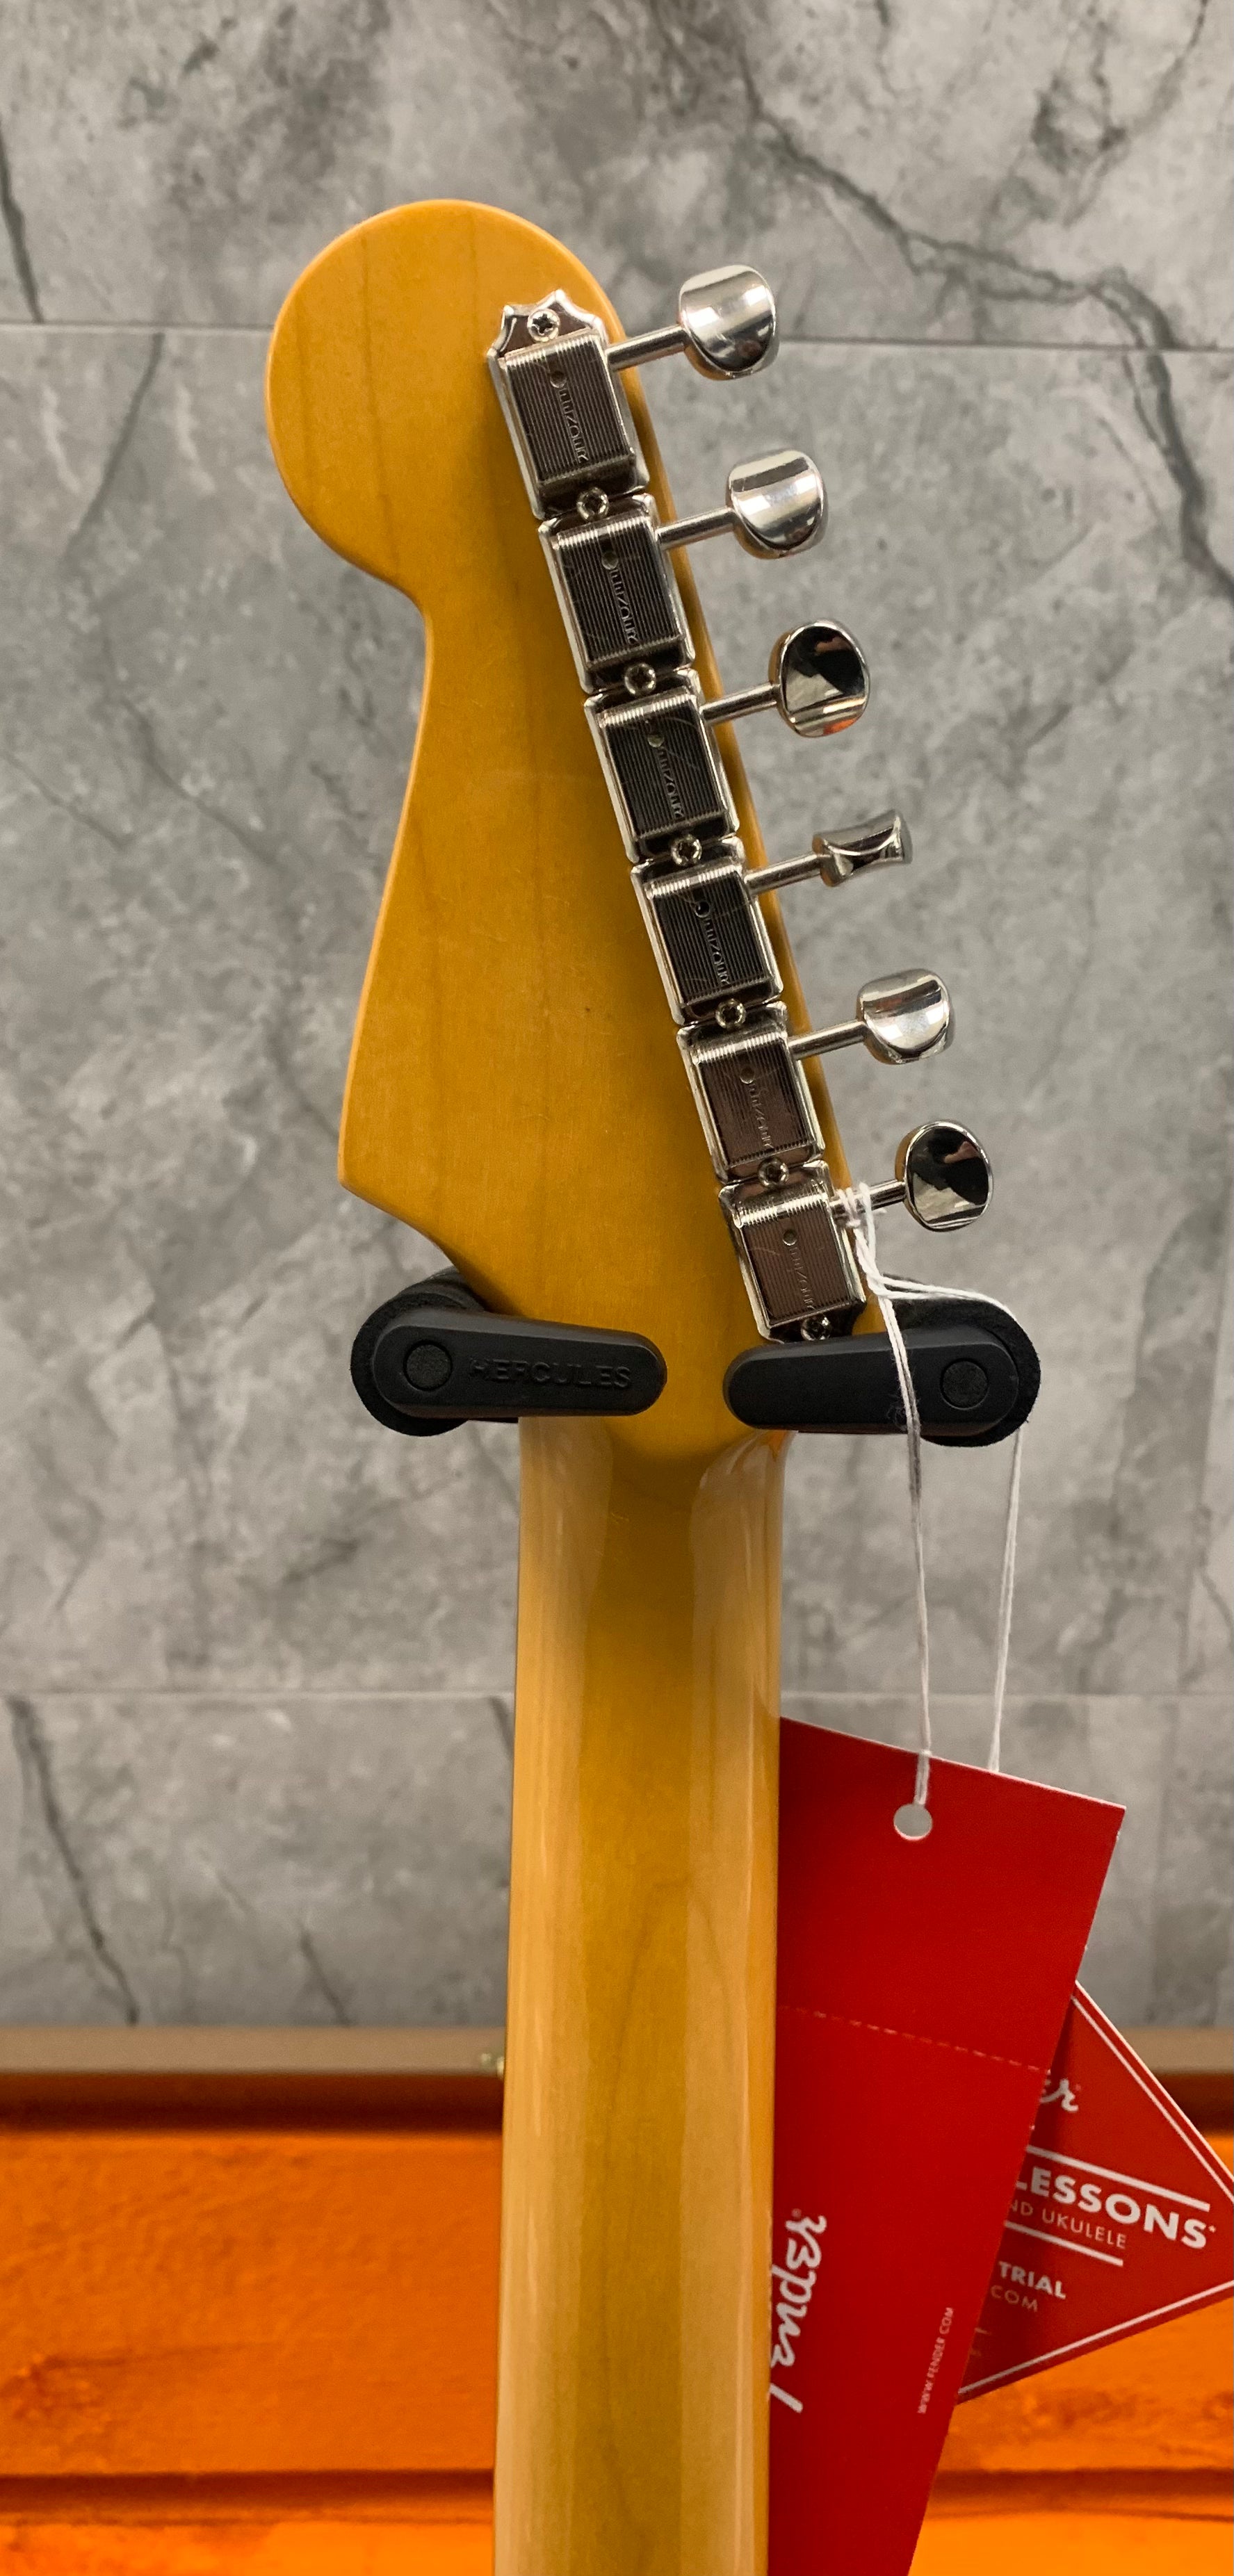 Fender American Vintage II 1961 Stratocaster Rosewood Fingerboard, Fiesta Red 0110250840